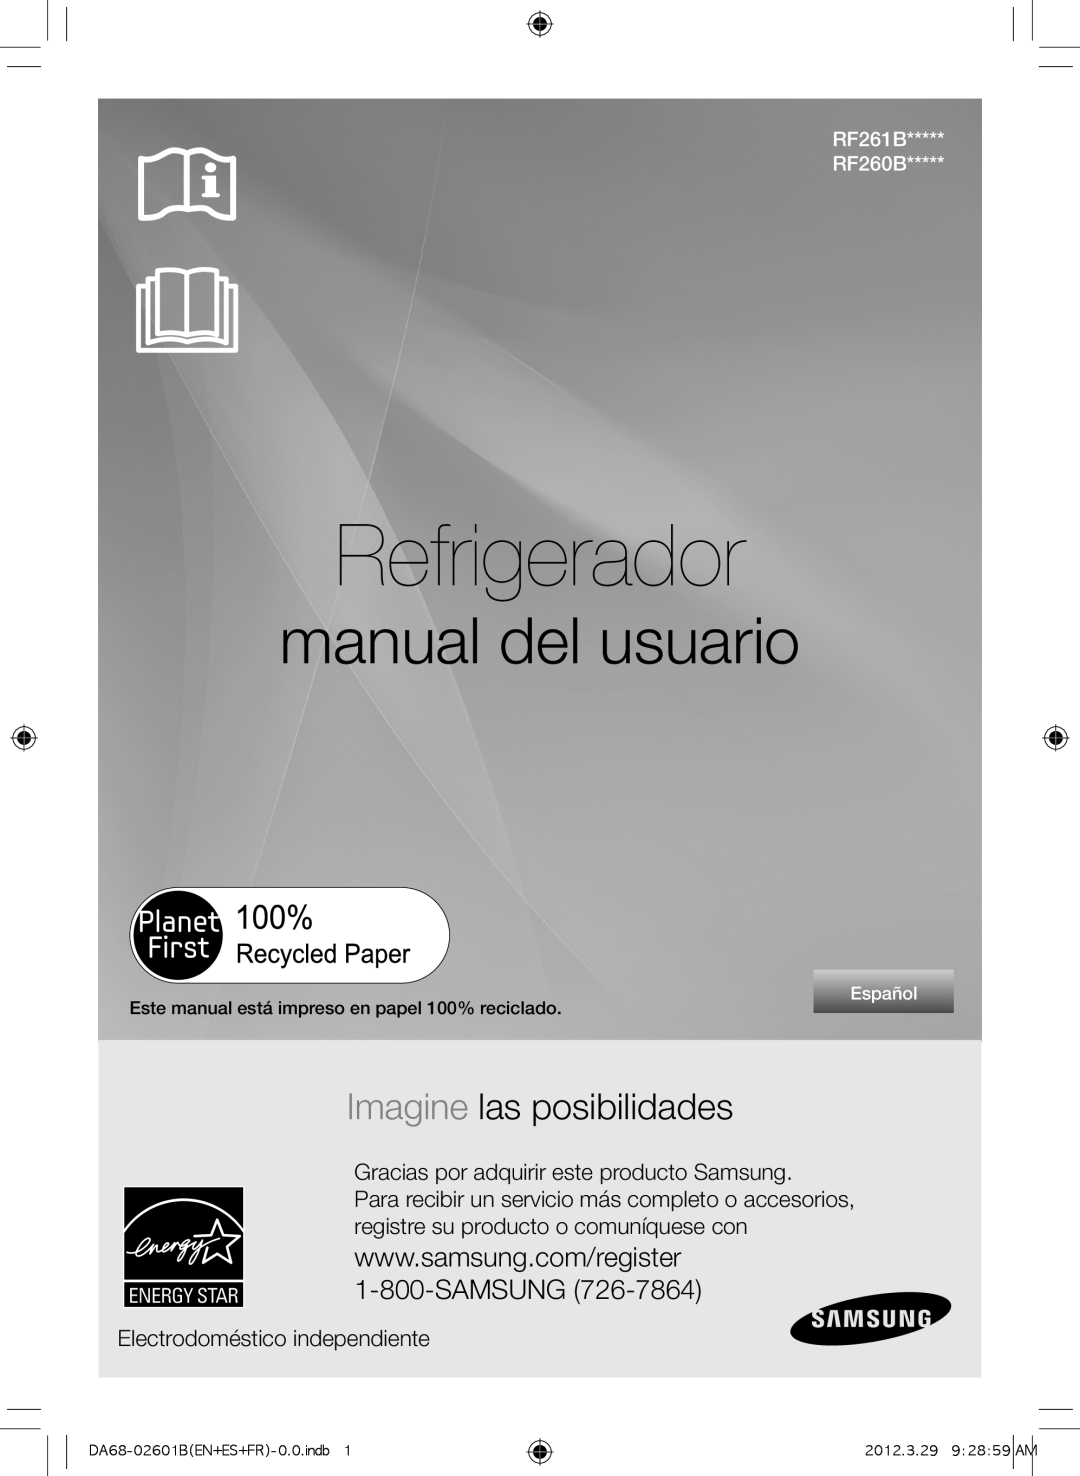 Samsung RF261BEAEWW Refrigerador, manual del usuario, Imagine las posibilidades, Electrodoméstico independiente, Español 